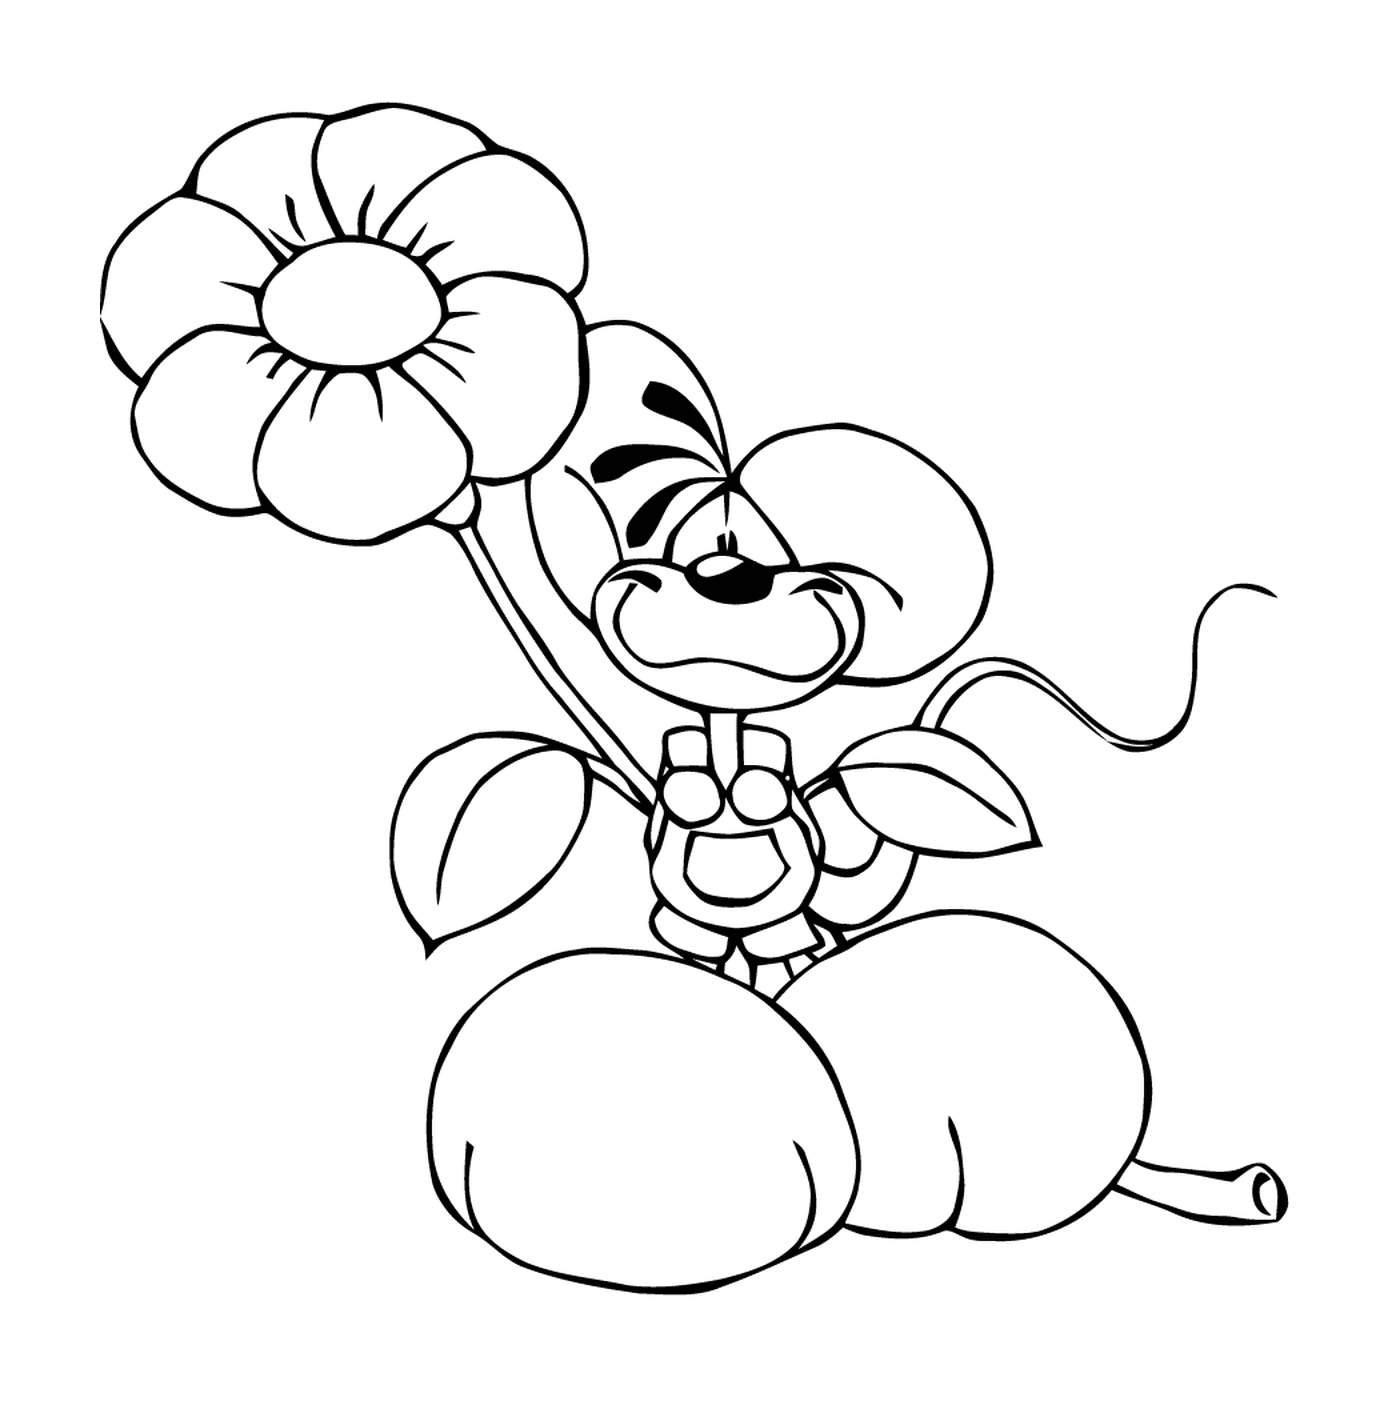  Un perro de dibujos animados sosteniendo una flor 